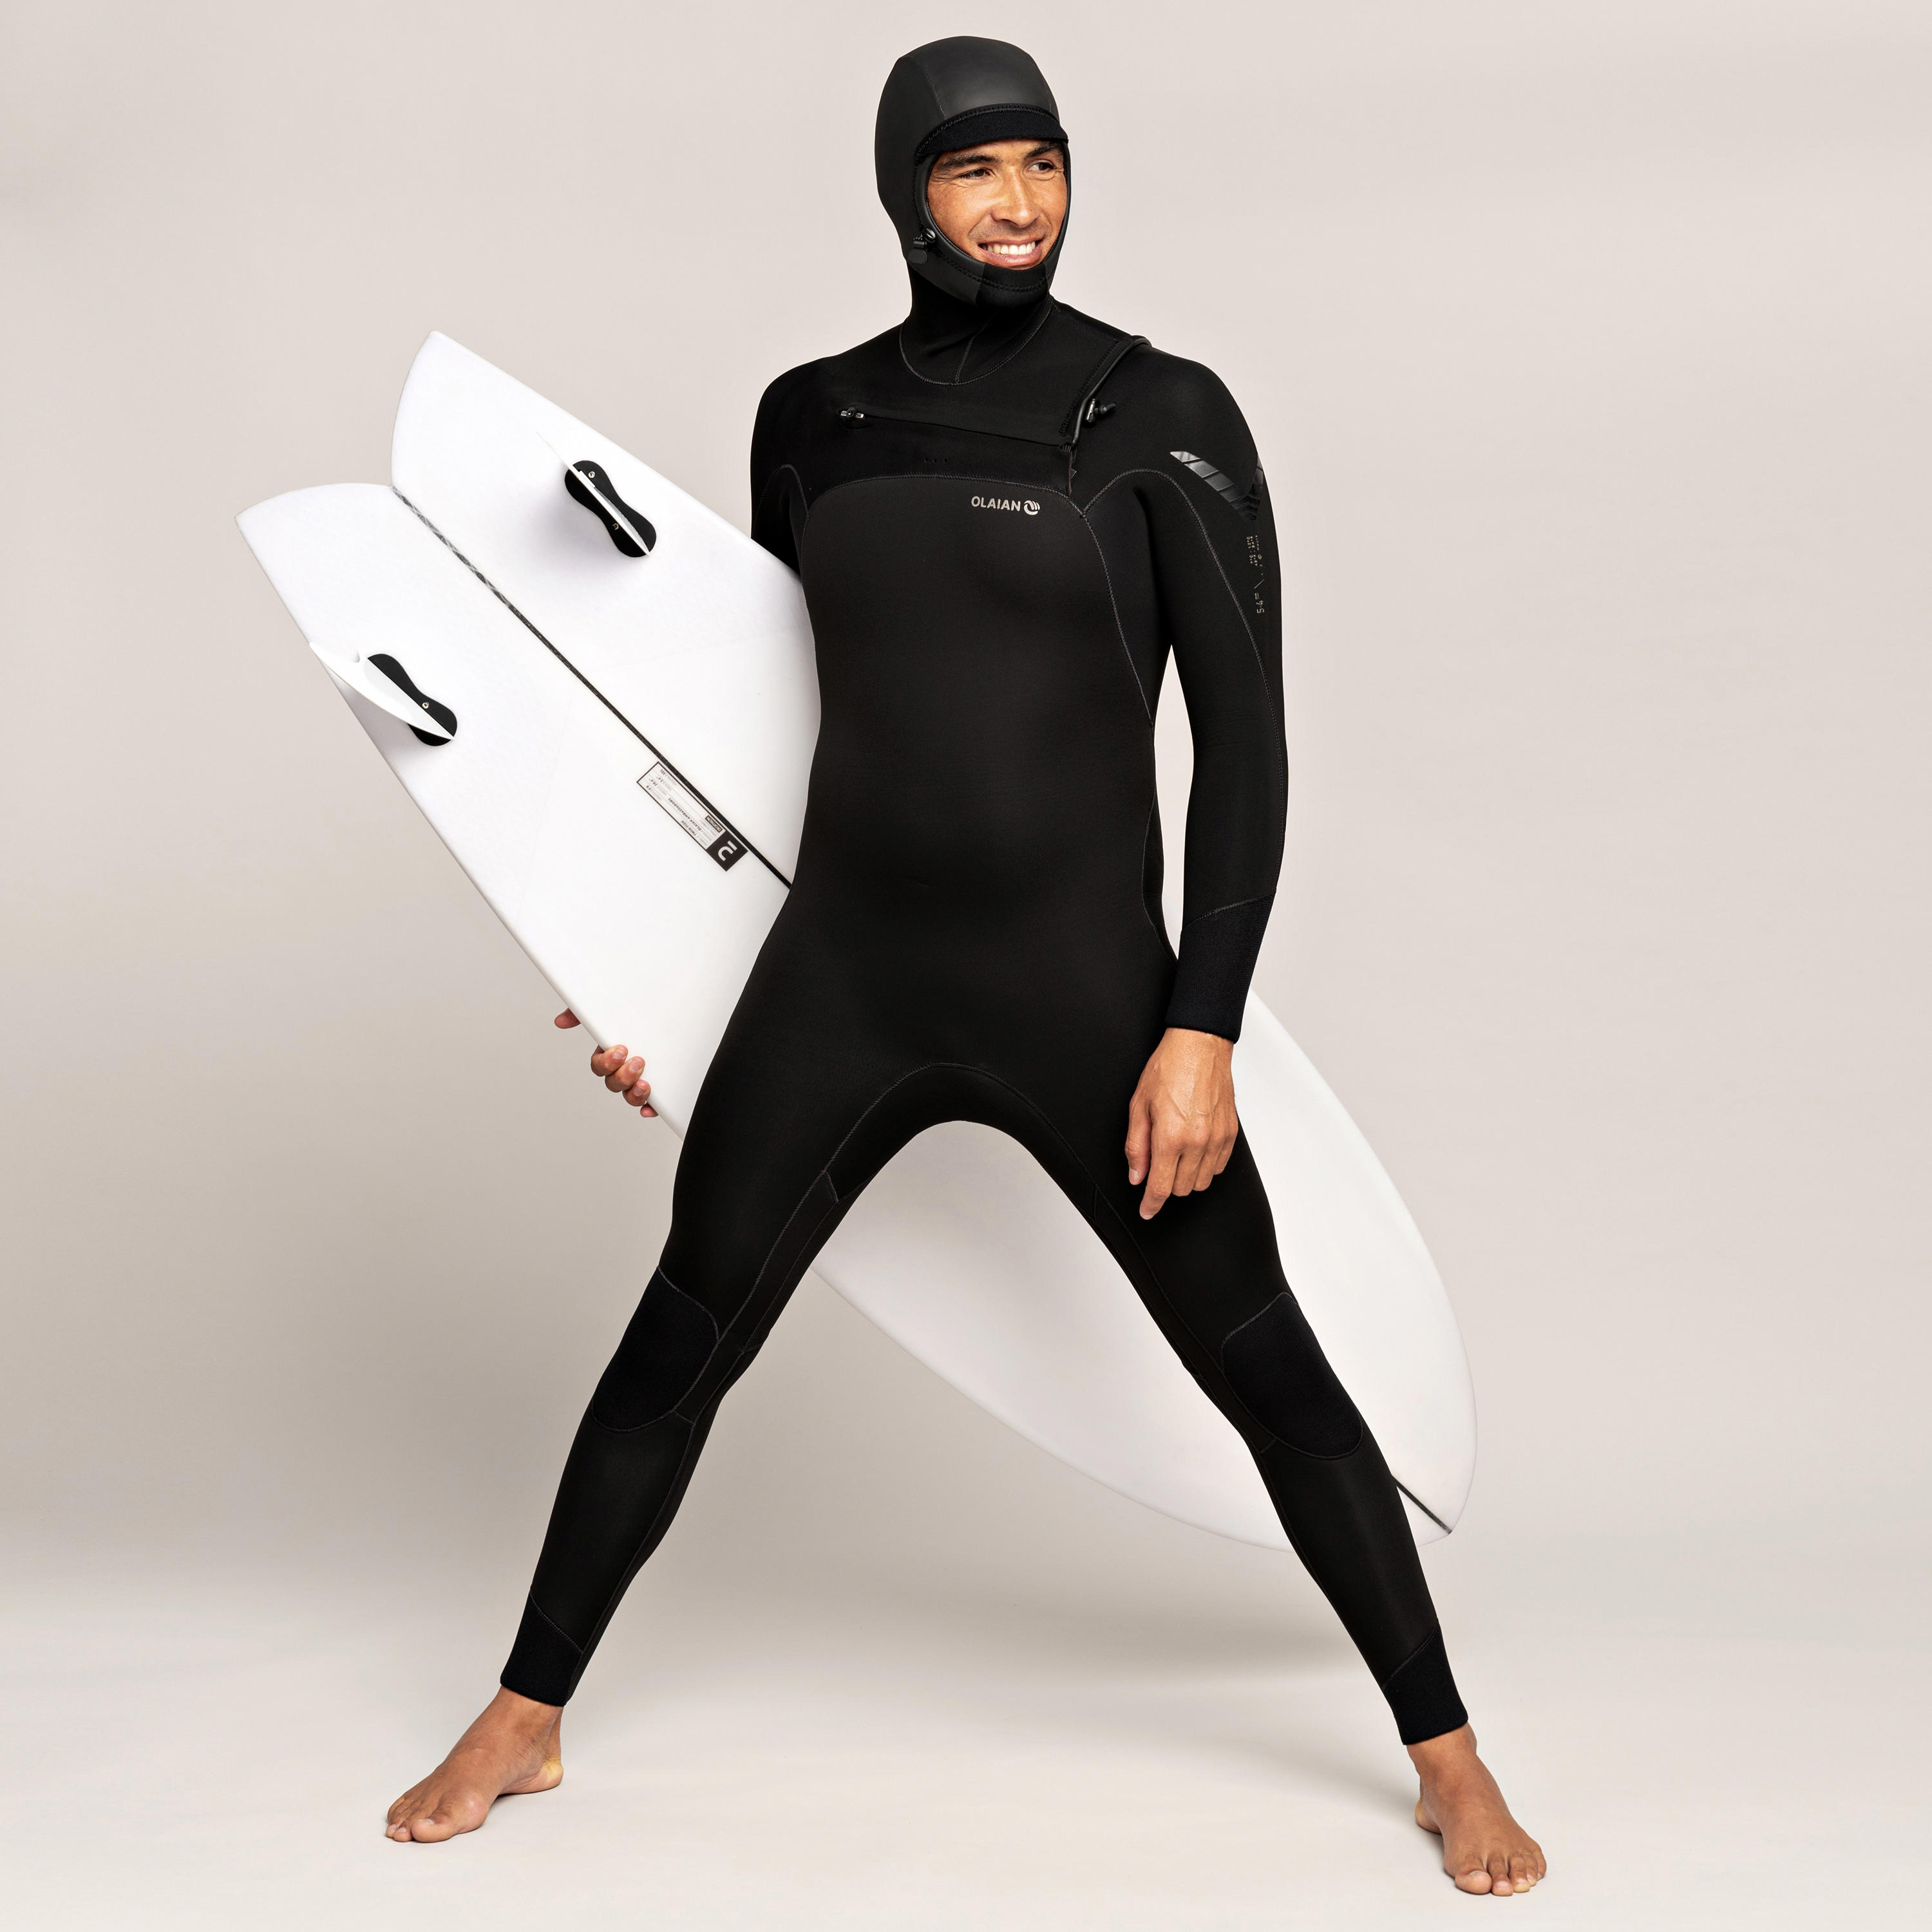 decathlon surf suit